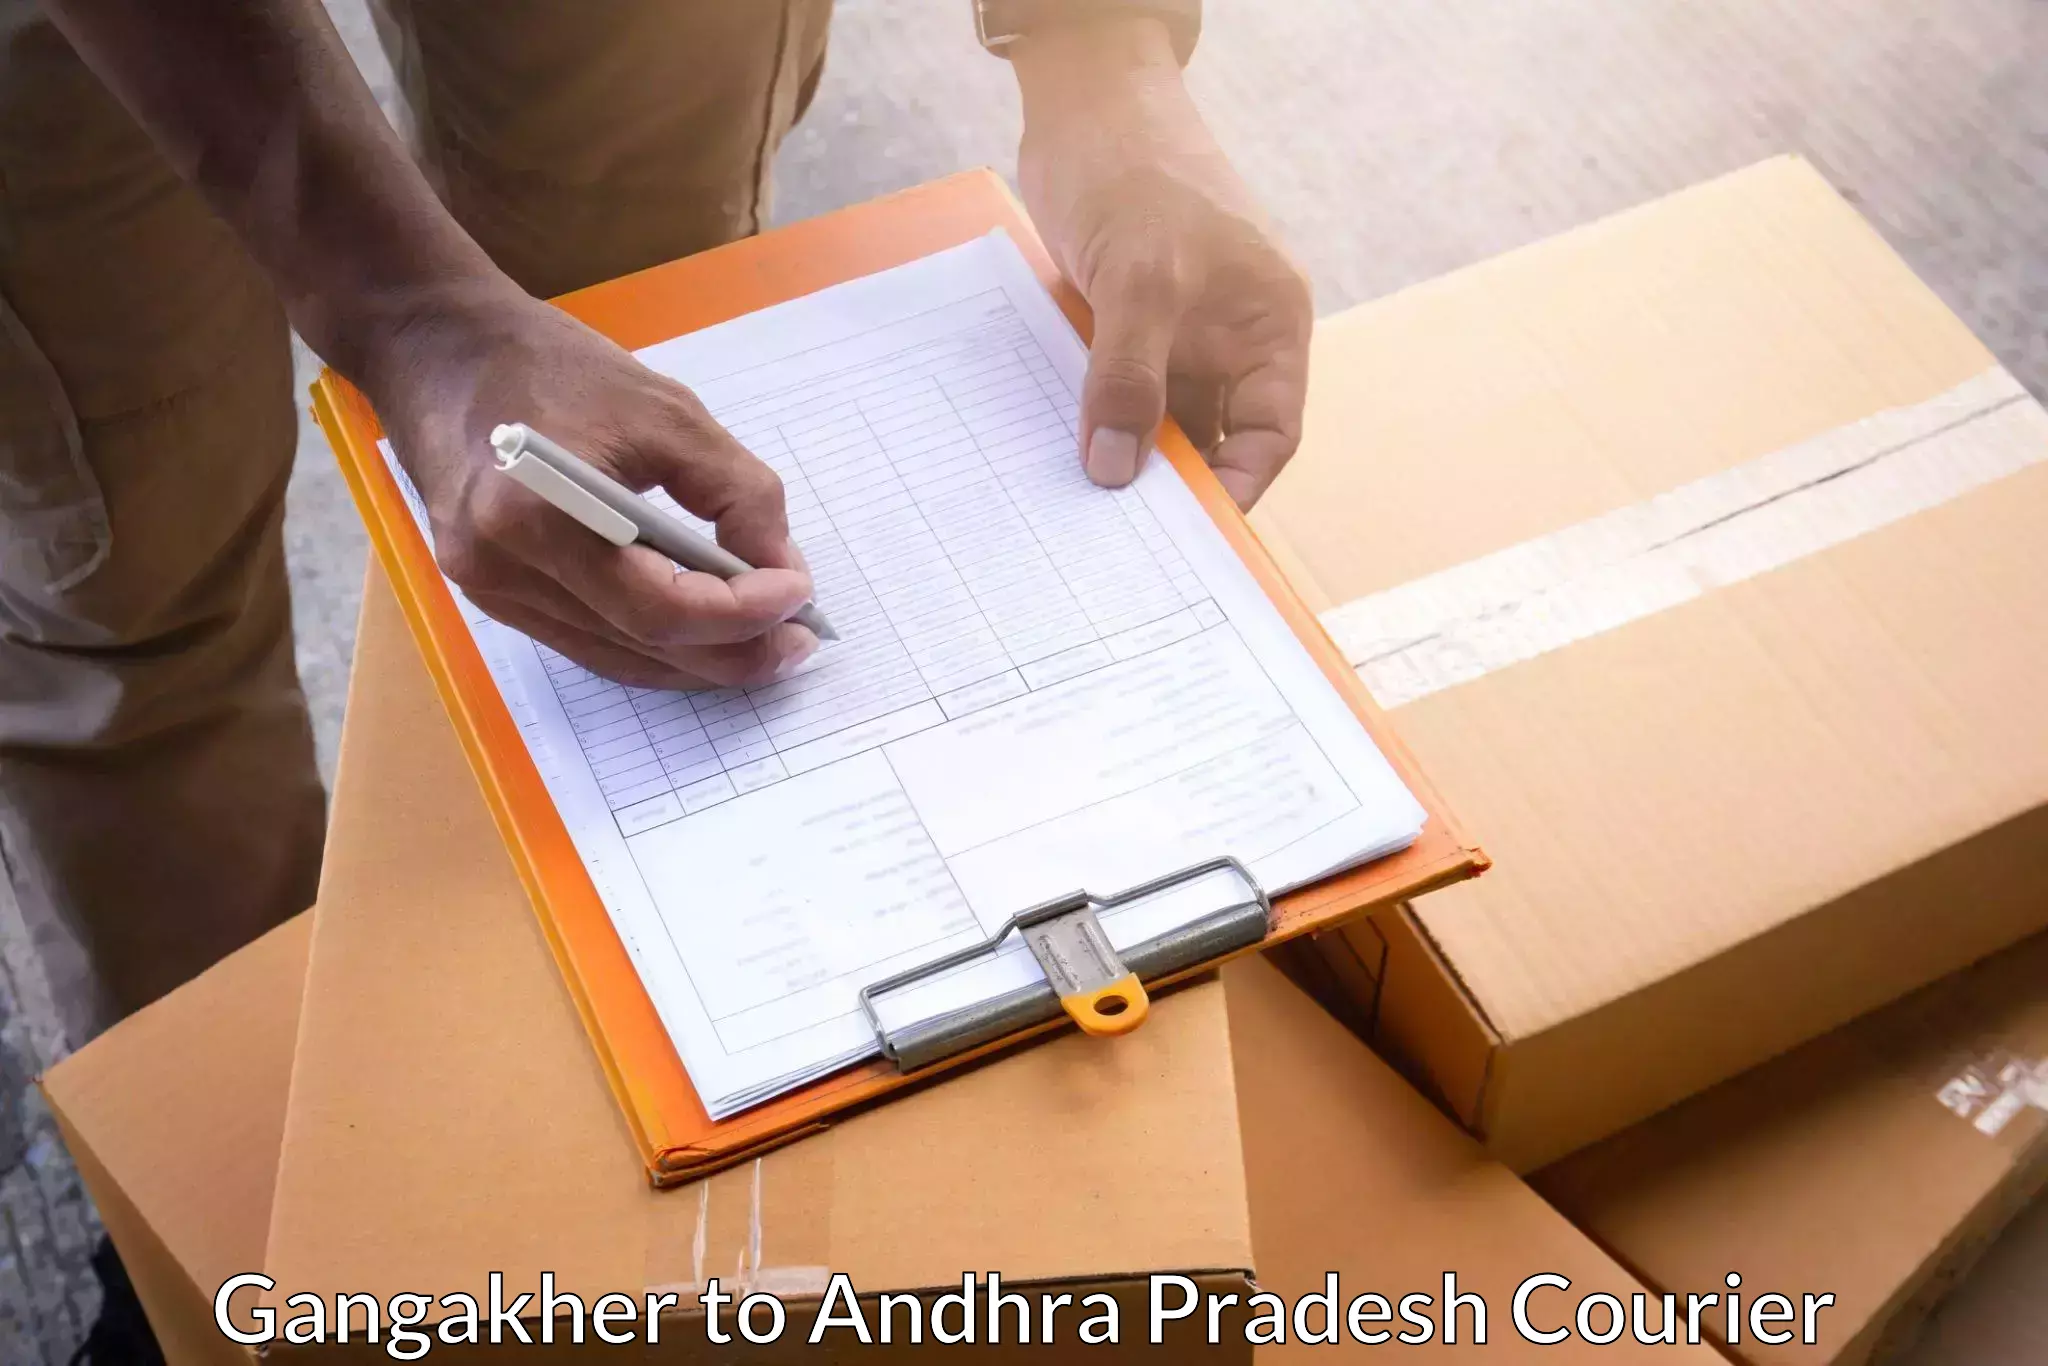 Customized shipping options Gangakher to Gudivada